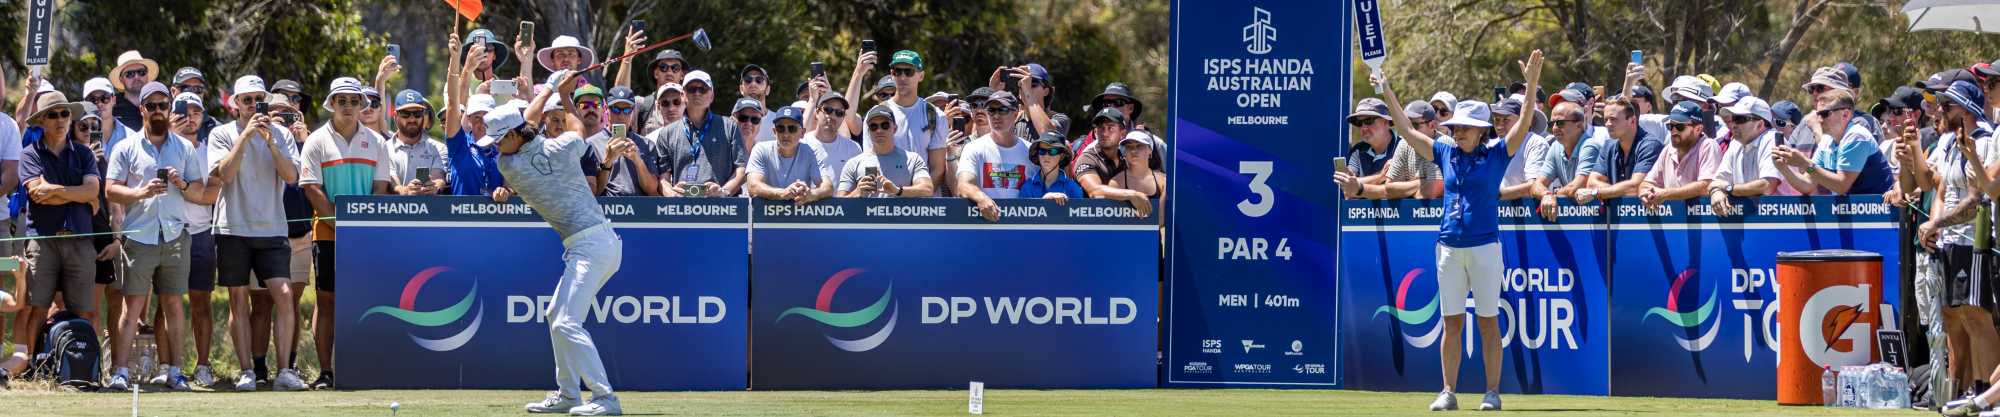 2022 Australian Open_DP World Tour_banner